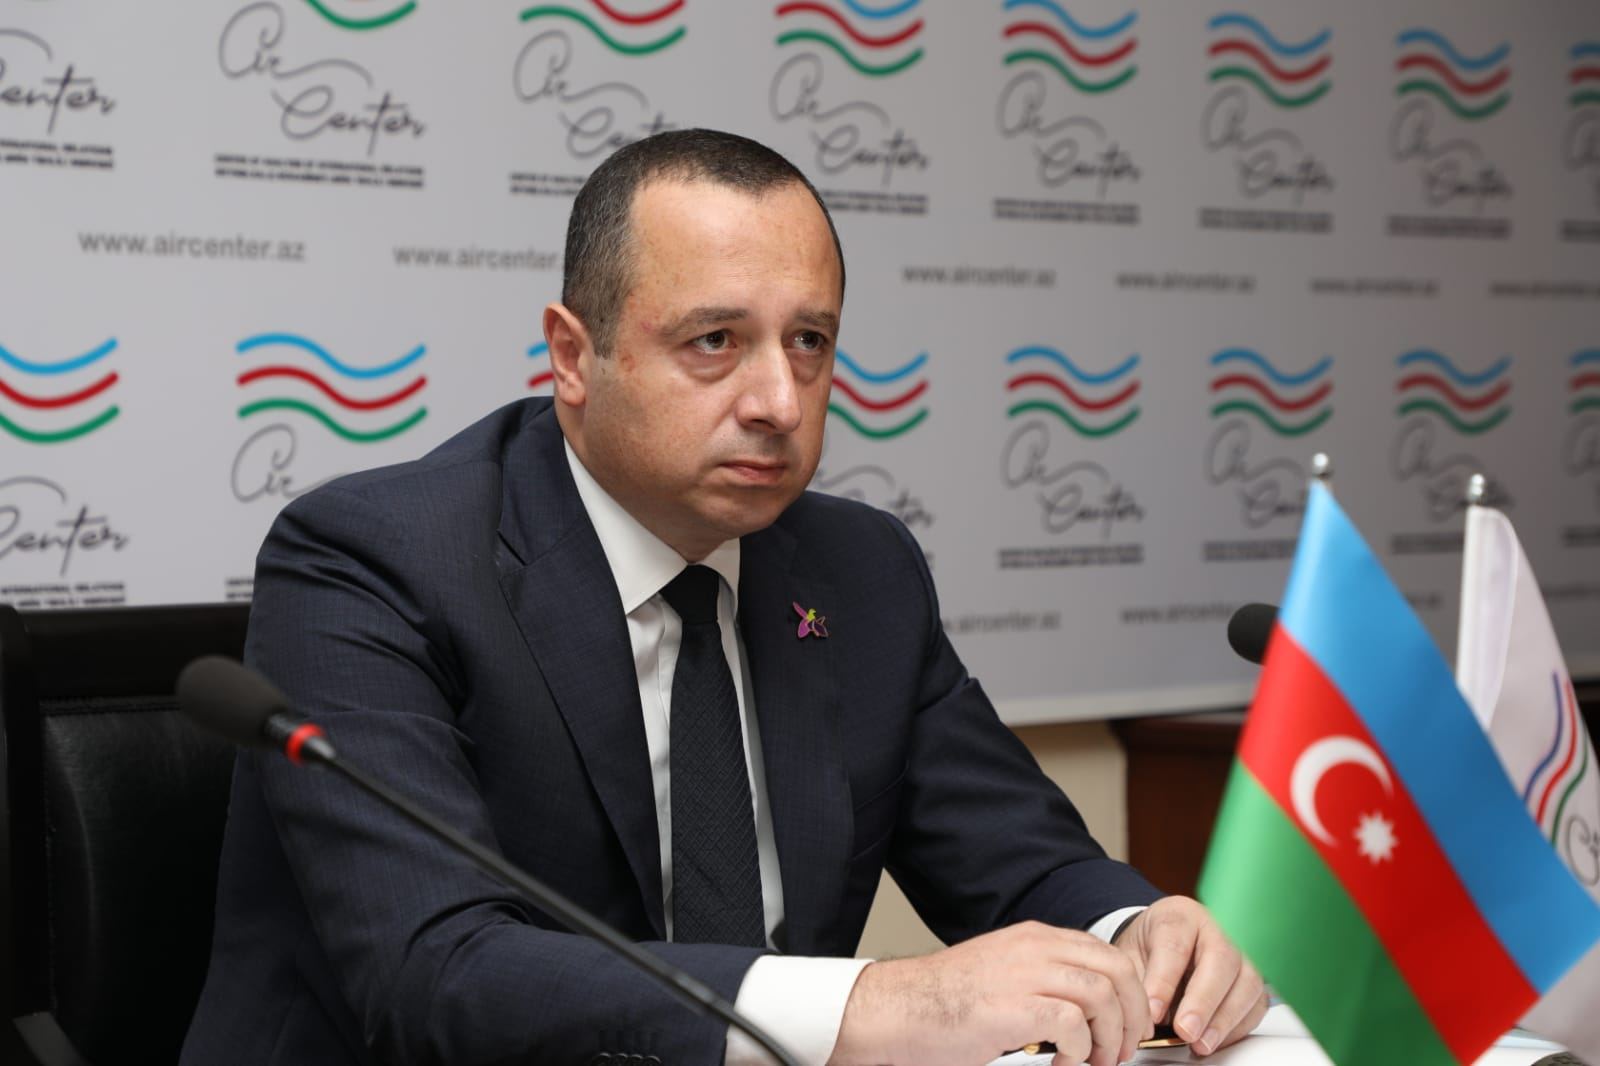 Армения обязана предоставить Азербайджану точные минные карты  - Чингиз Аскеров